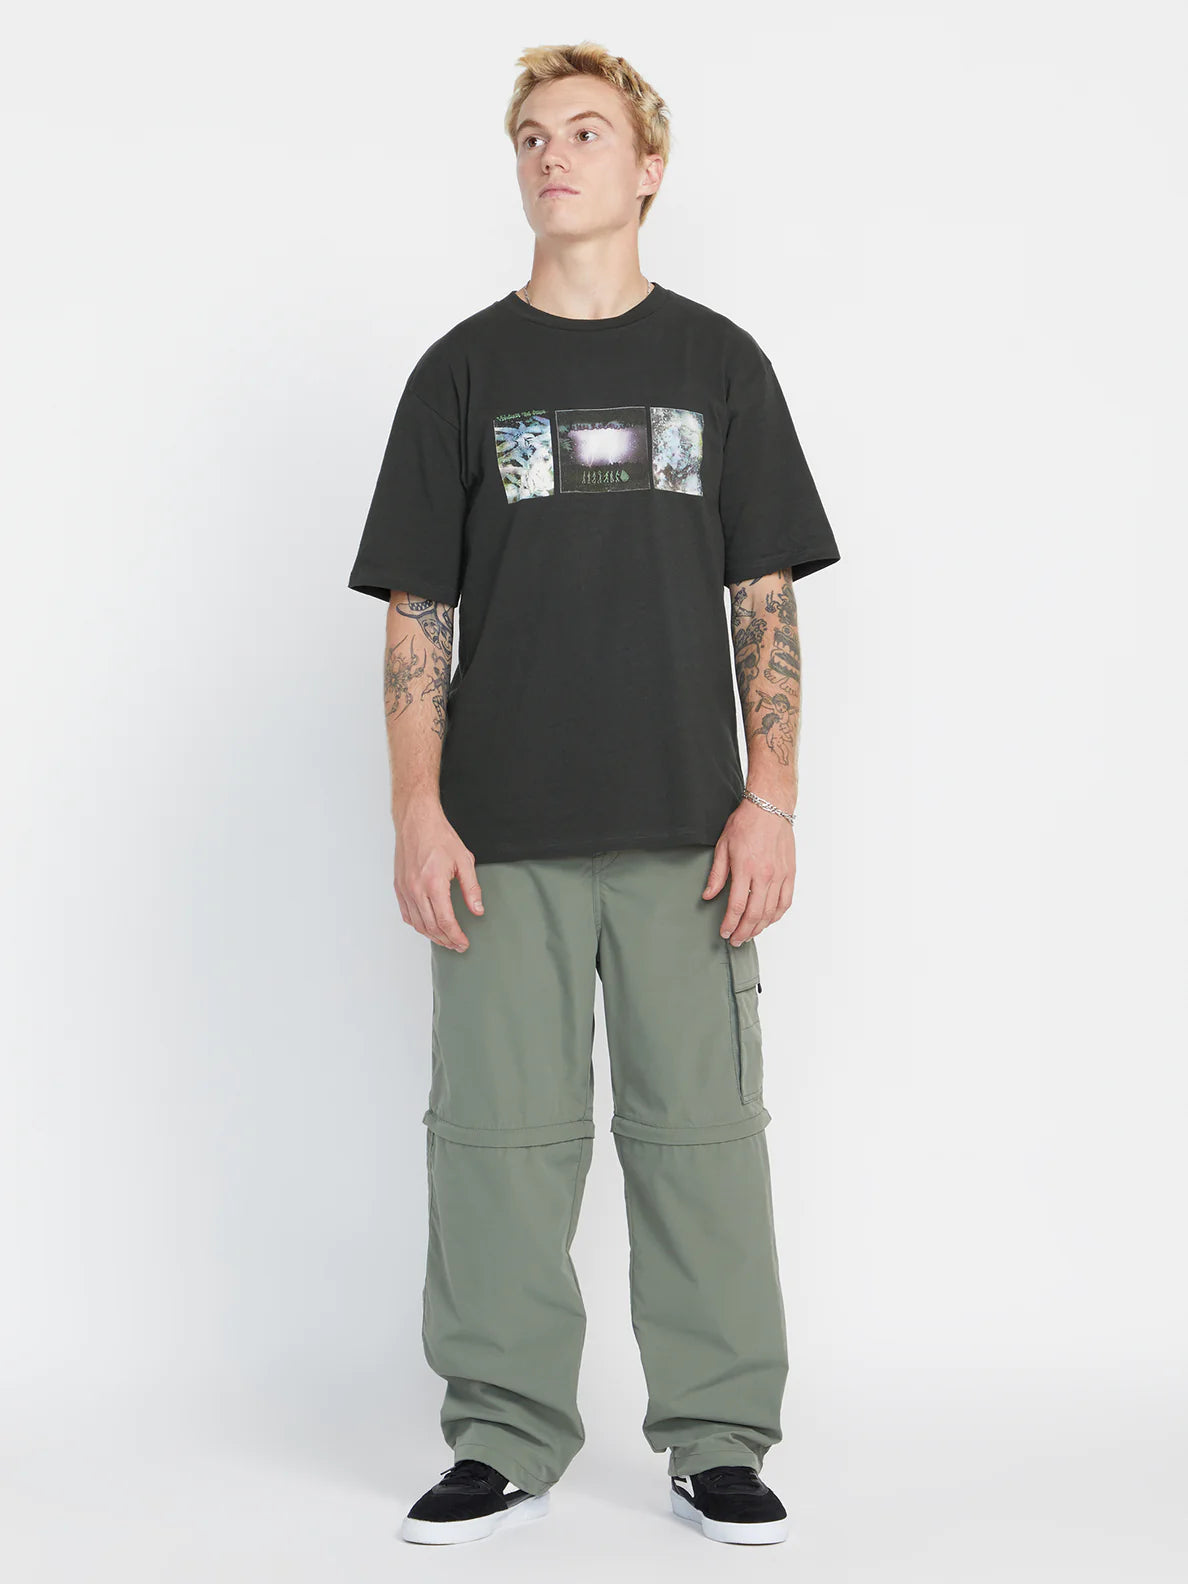 Camiseta Volcom Skate Vitals Simon Bannerot - Stealth | Camisetas de hombre | Camisetas manga corta de hombre | Volcom Shop | surfdevils.com